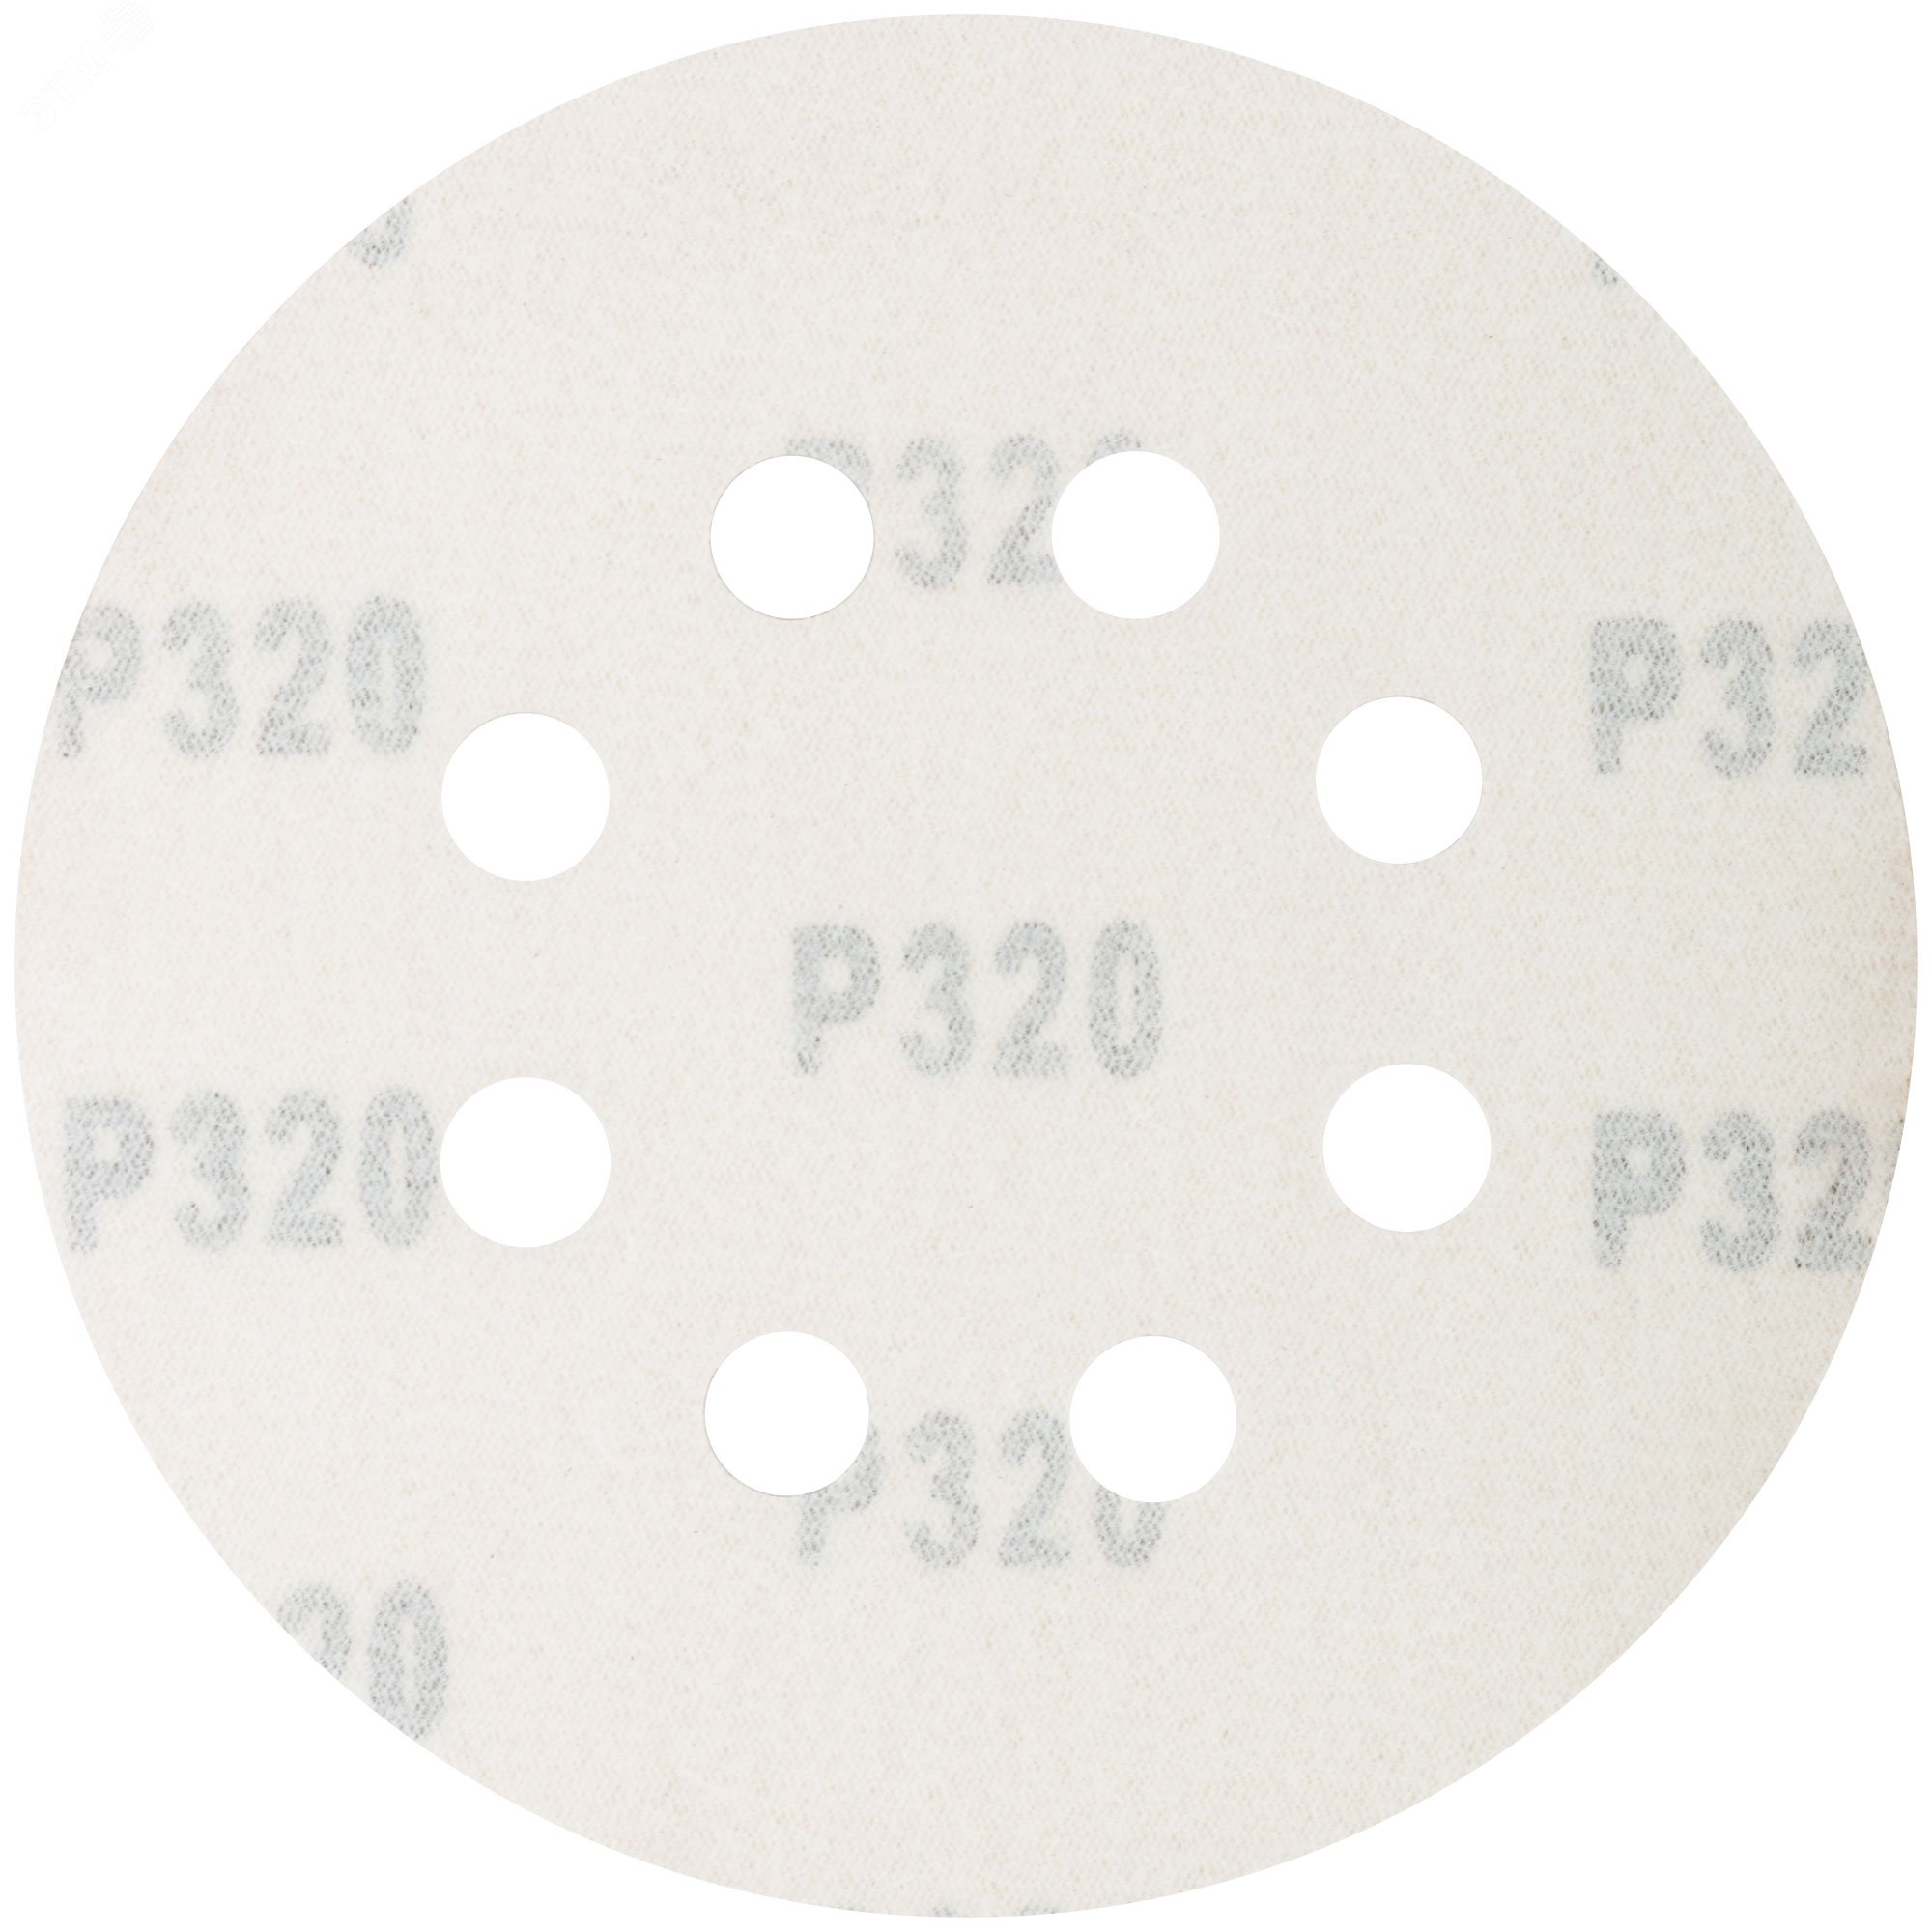 Круги абразивные шлифовальные перфорированные на ворсовой основе под ''липучку'' (Р320, 125 мм, 5шт), Profi 85-626 CUTOP - превью 2